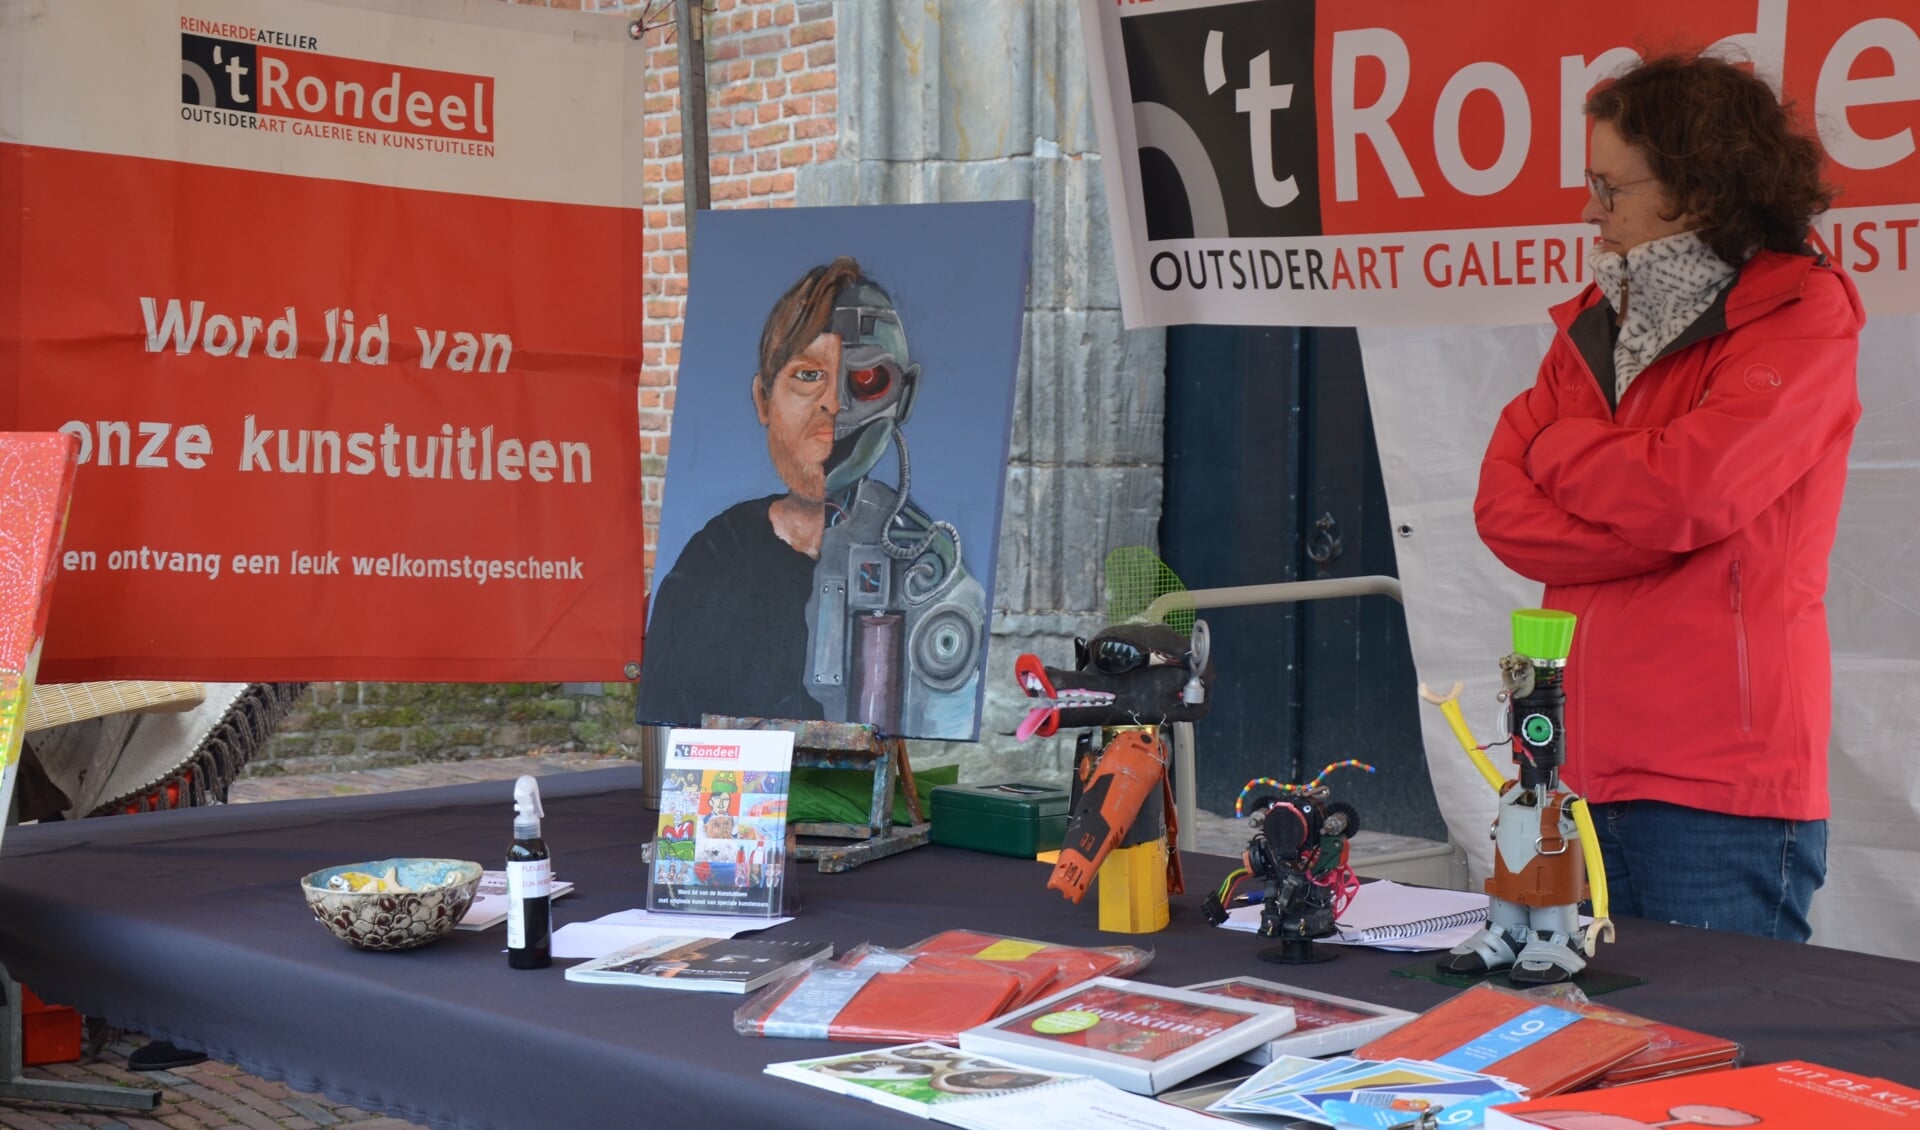 Outsider Art Rondeel is vertegenwoordigd op de Kunstmarkt